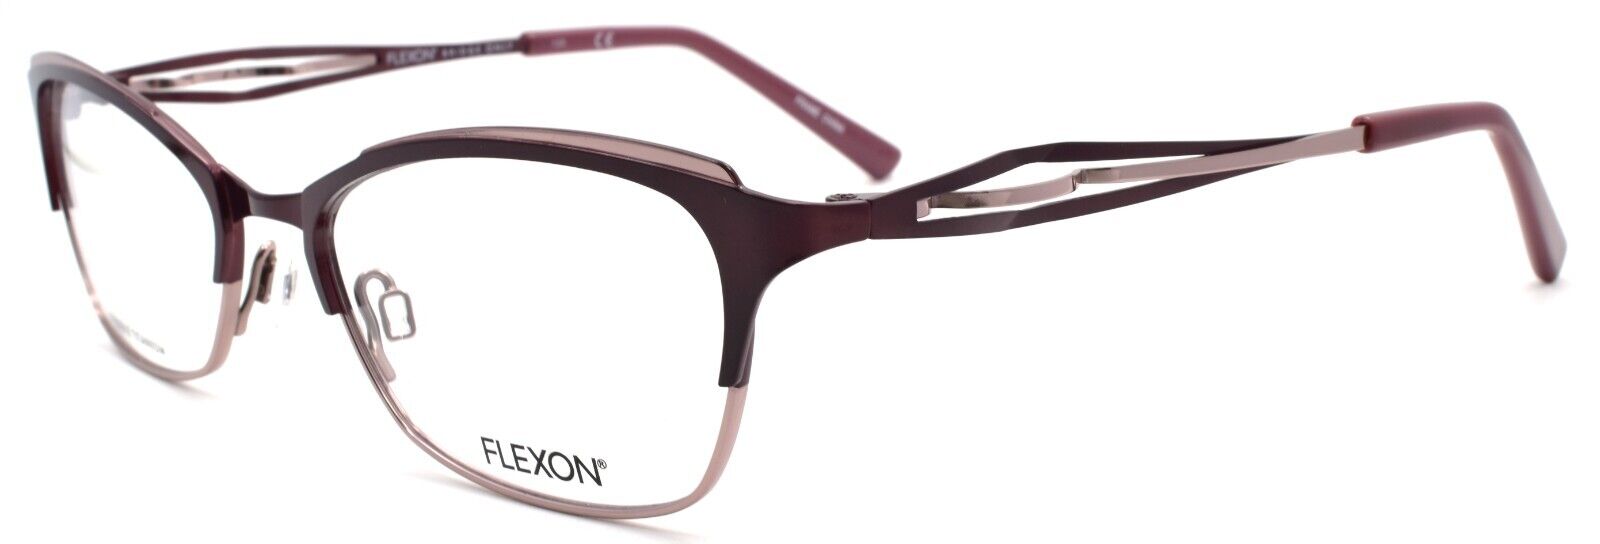 1-Flexon W3000 505 Women's Eyeglasses Frames Plum 51-17-135 Titanium Bridge-883900202848-IKSpecs